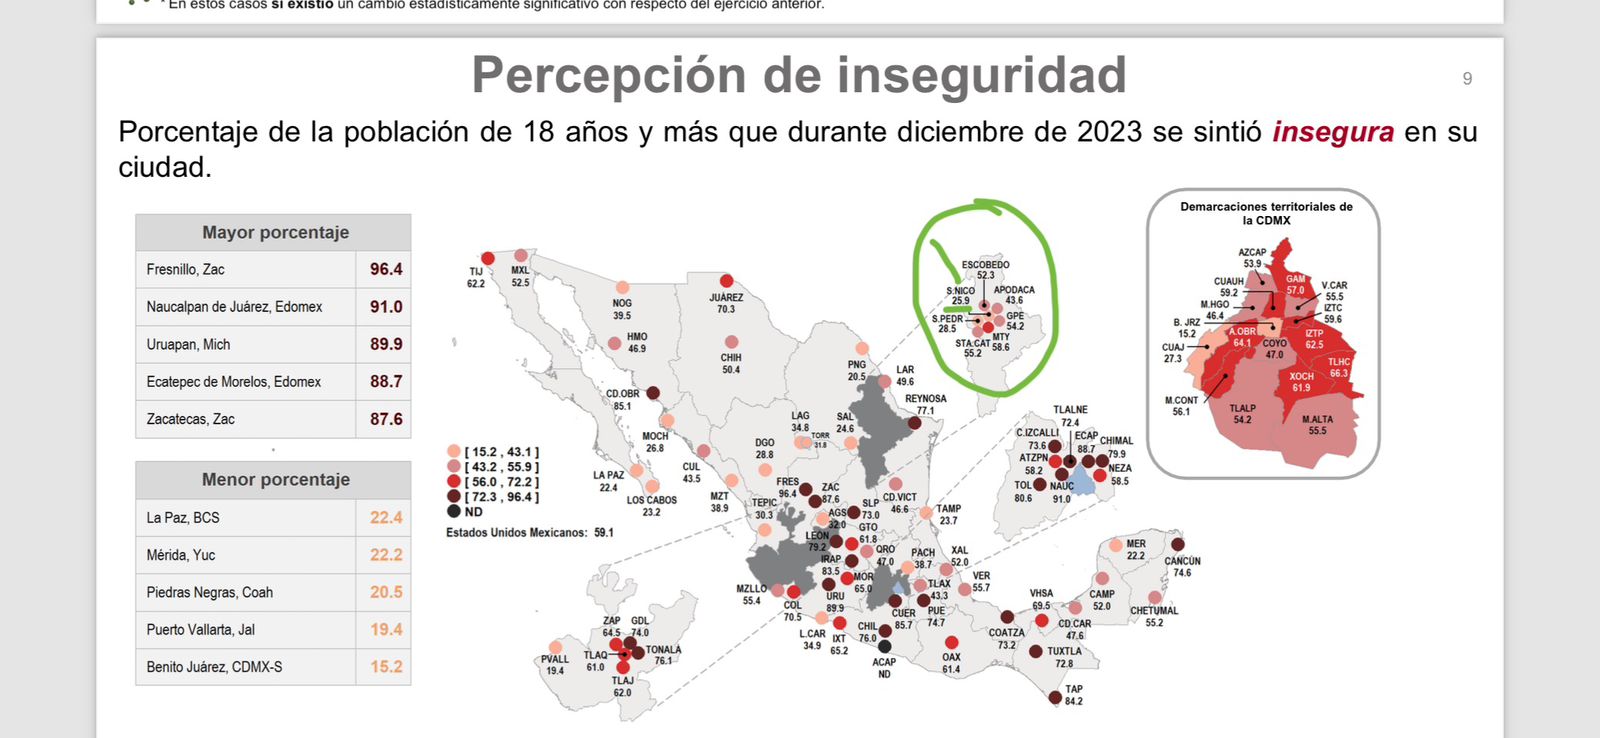 San Nicolás disminuye percepción de inseguridad; encabeza área metropolitana: INEGI